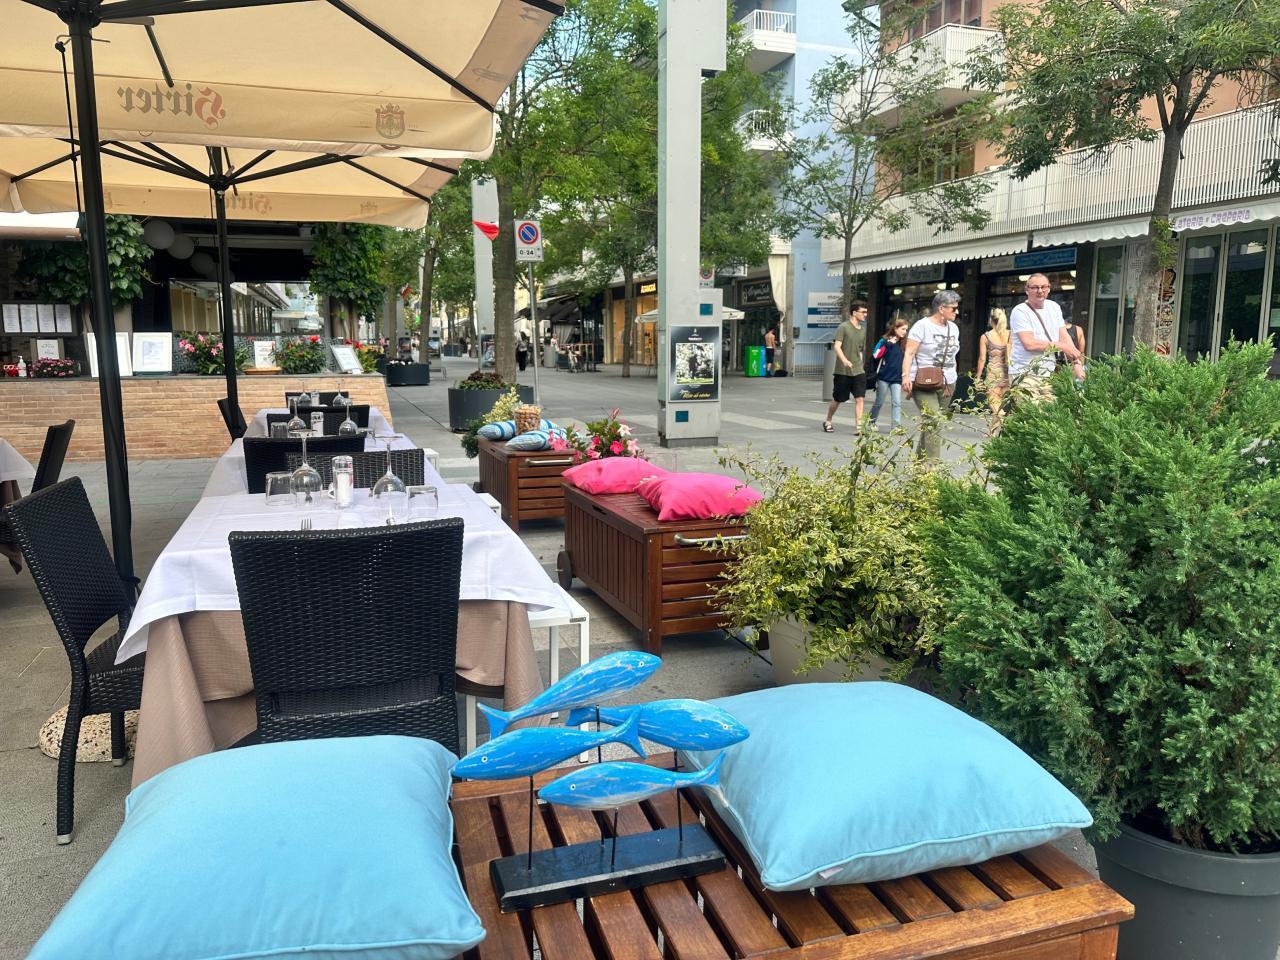 Restaurant Terrasse mit Tischen und Sonnenschirmen